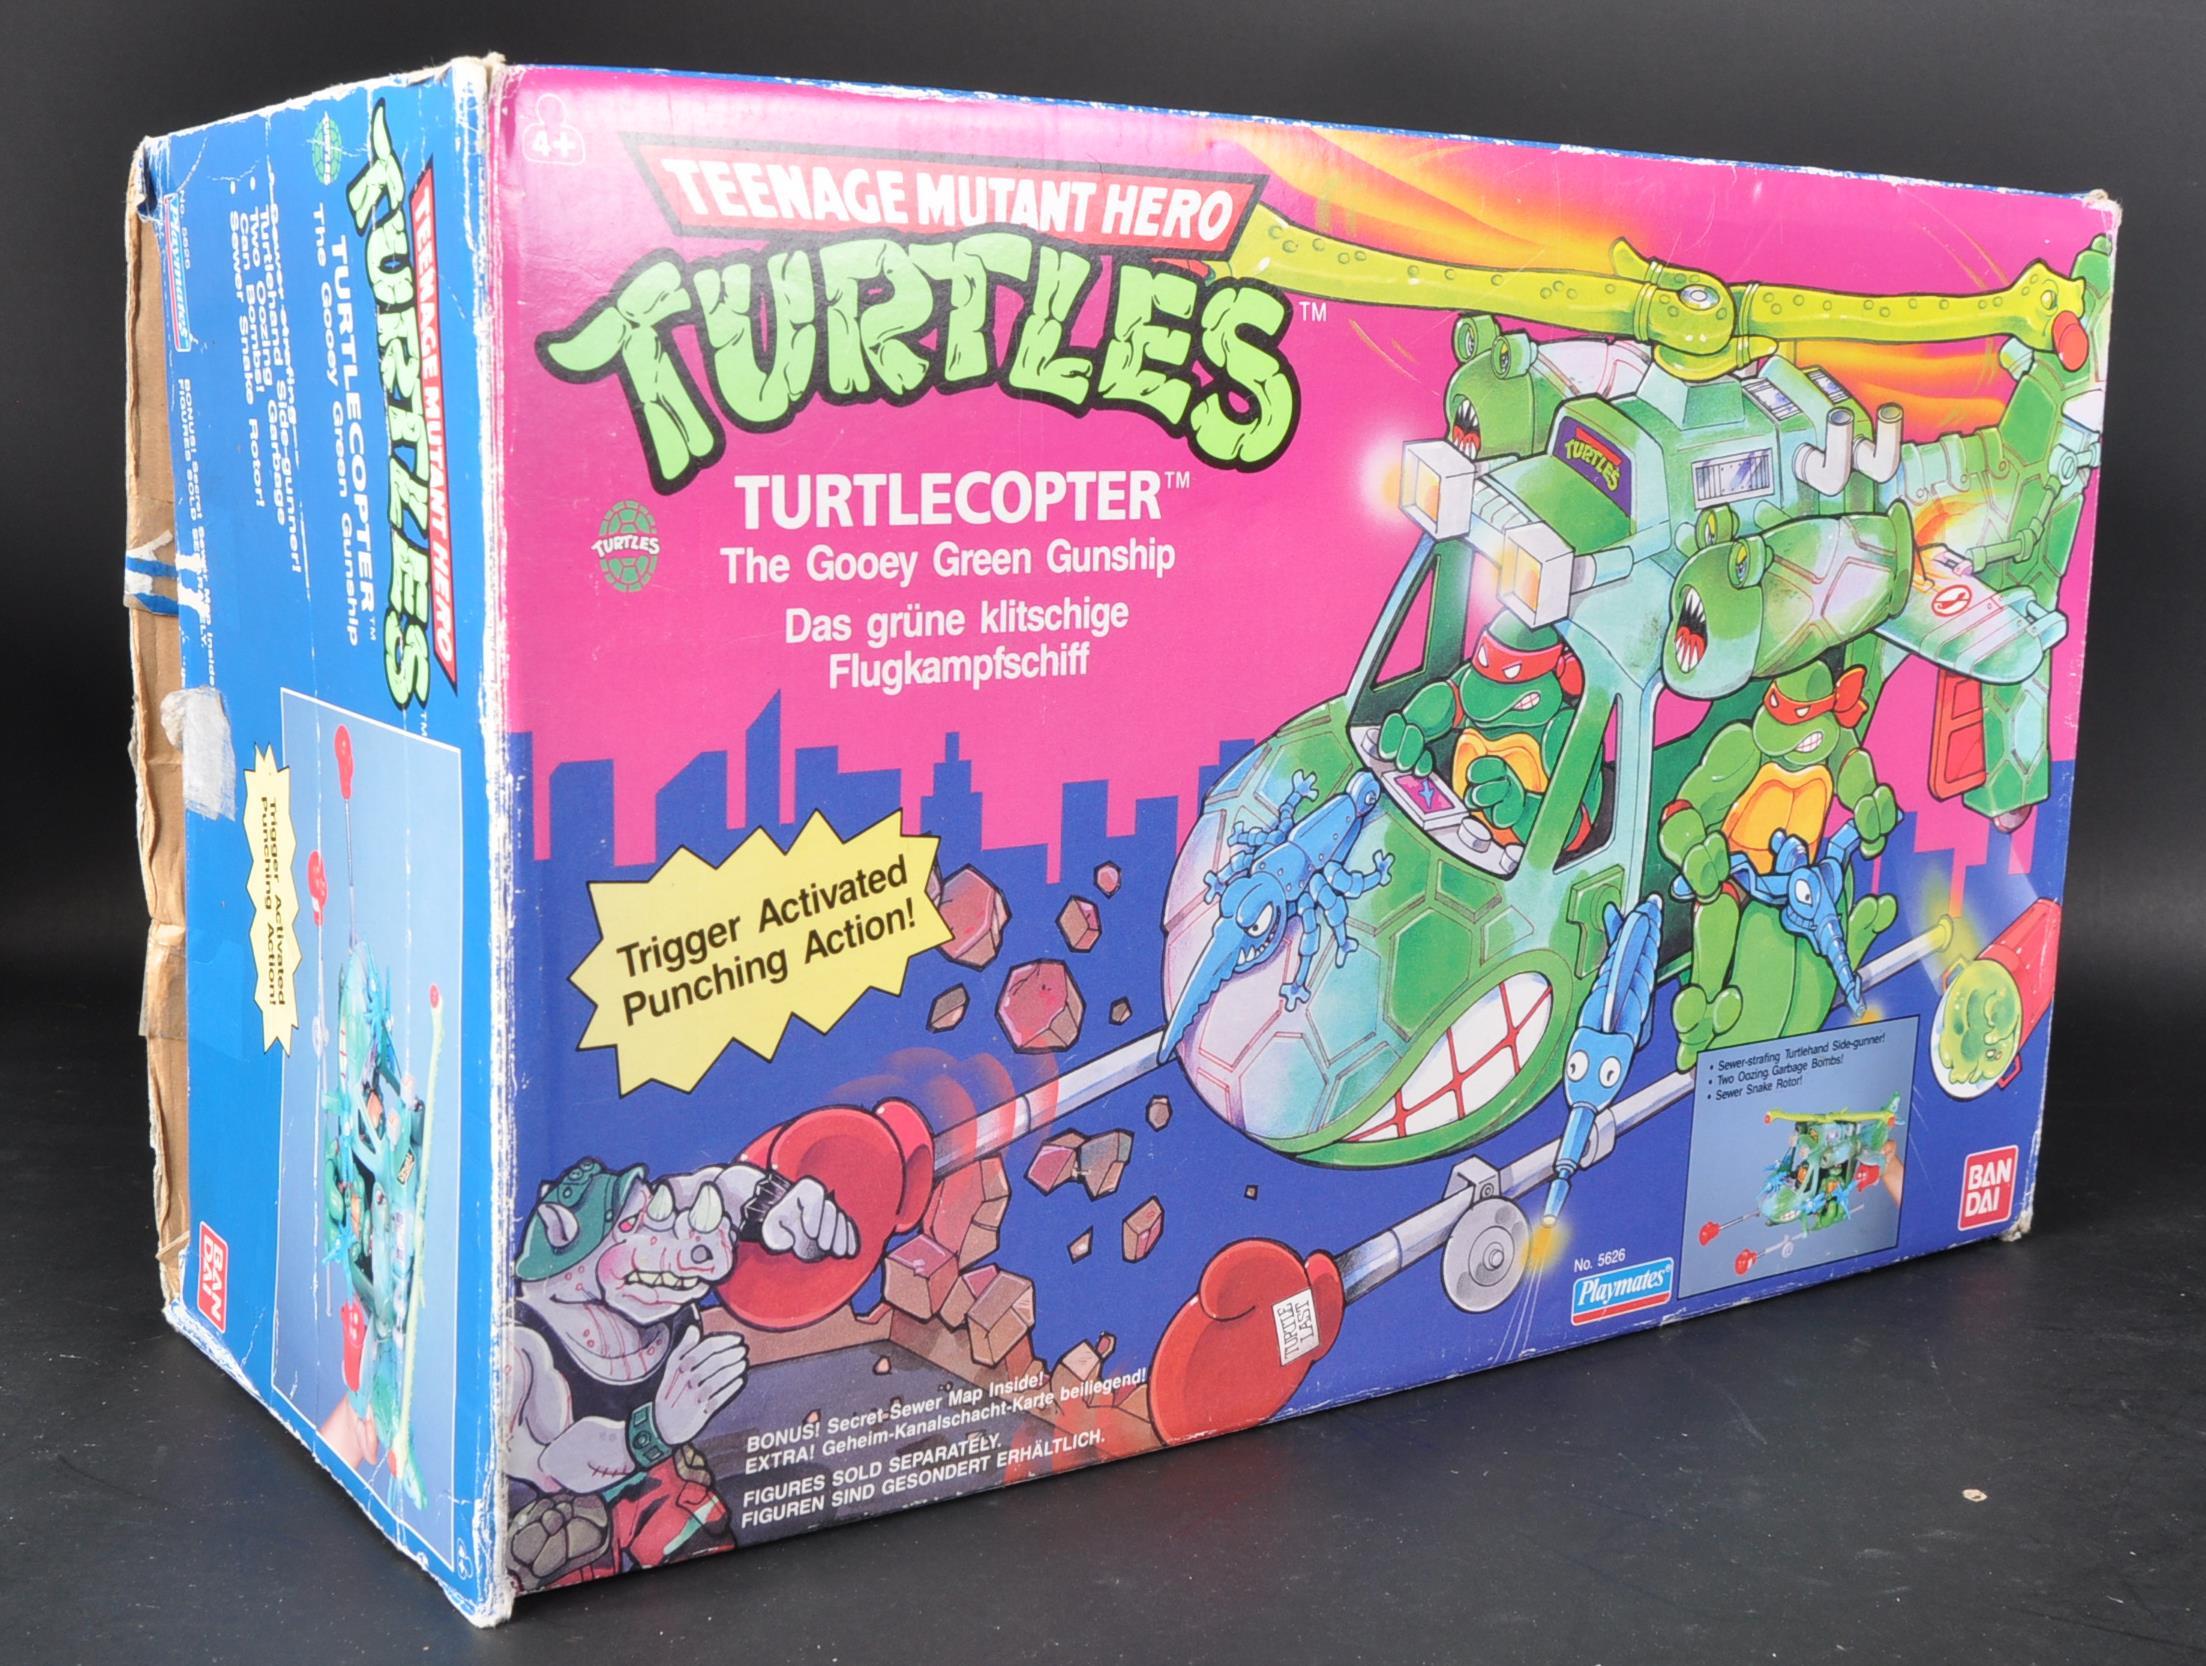 TEENAGE MUTANT NINJA TURTLES - BOXED PLAYMATES TMNT TURTLECOPTER PLAYSET - Image 7 of 8